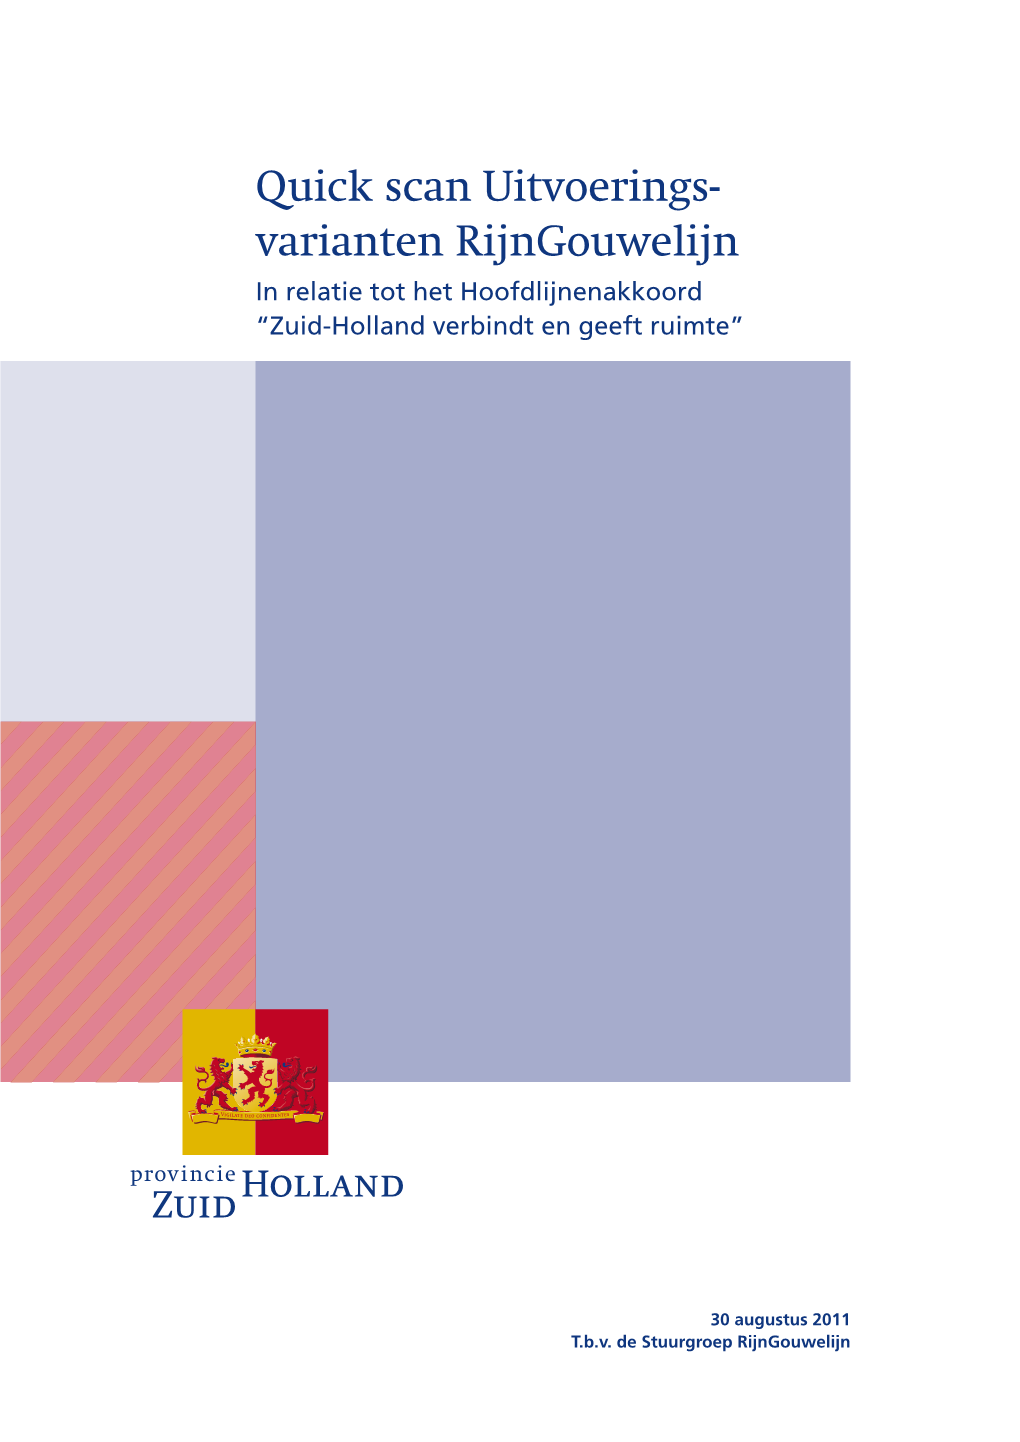 Varianten Rijngouwelijn in Relatie Tot Het Hoofdlijnenakkoord “Zuid-Holland Verbindt En Geeft Ruimte”